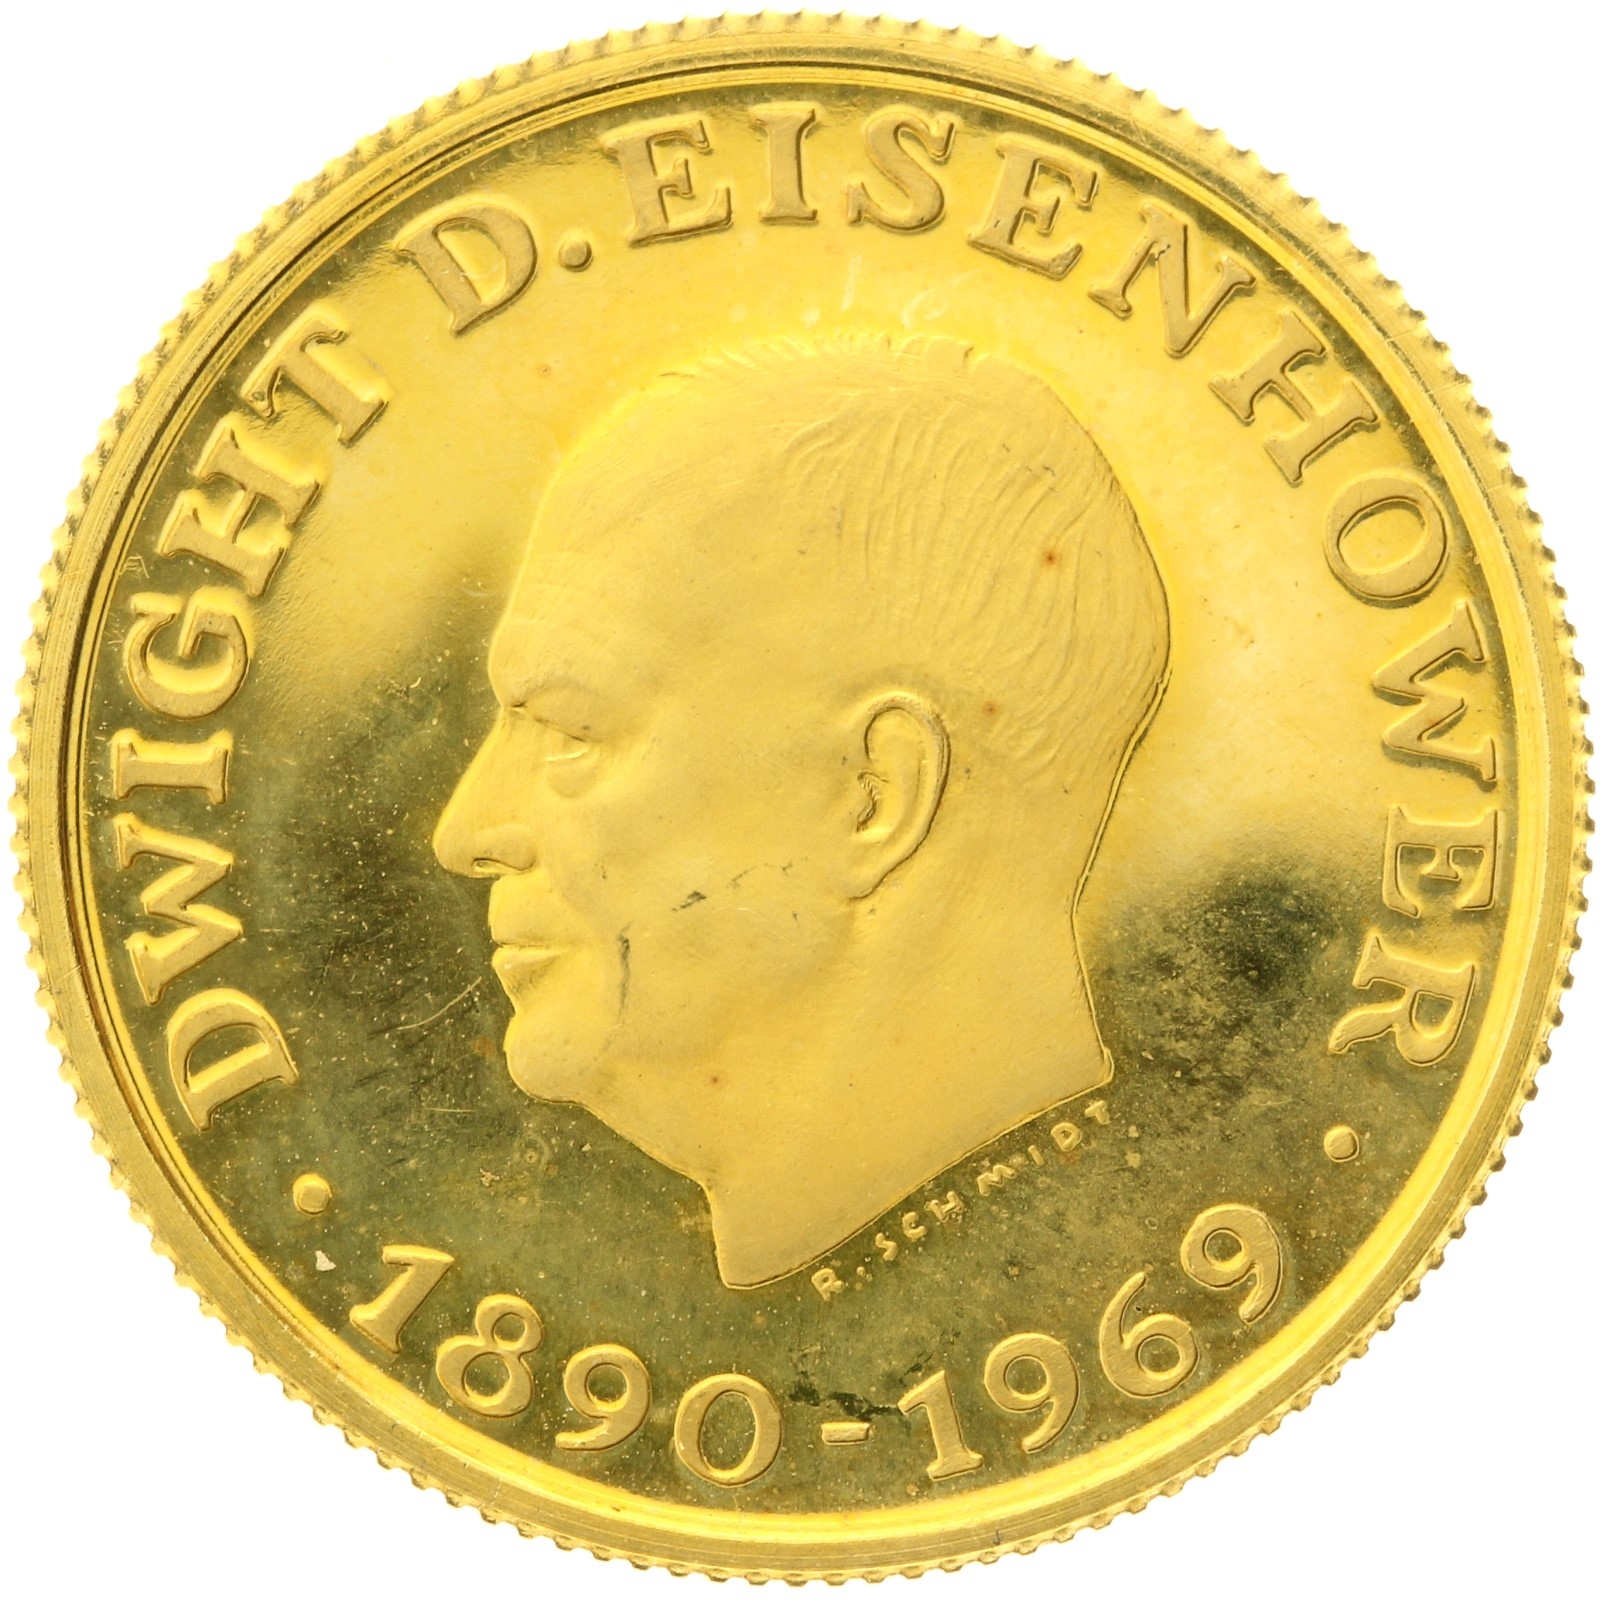 USA - Medal (1 ducat) - 1969 - Dwight D. Eisenhower